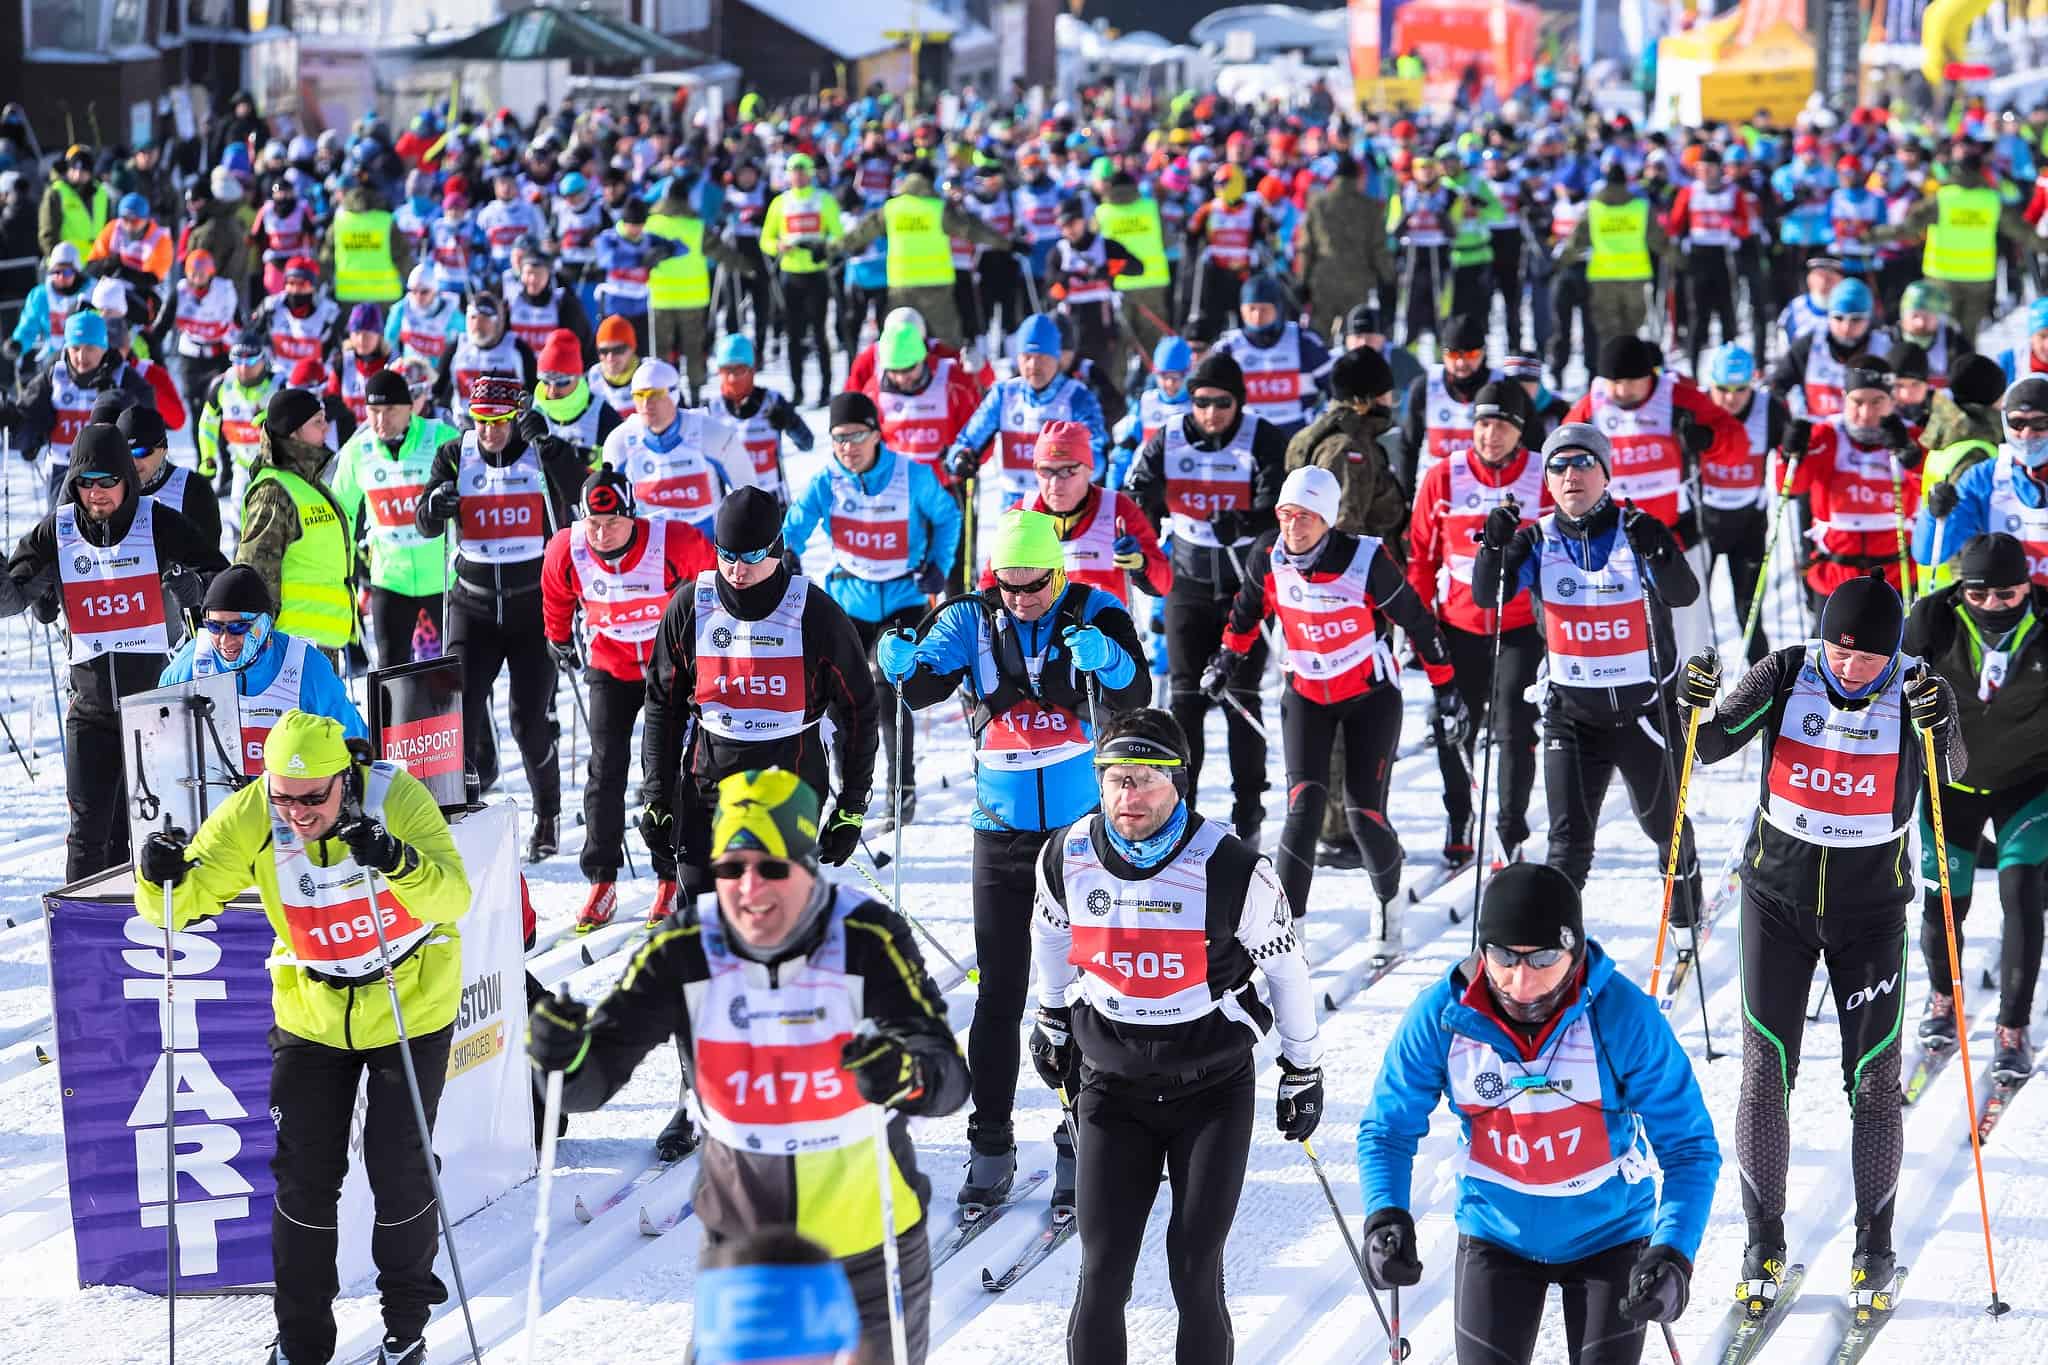 Bieg Piastów 2021: Międzynarodowe zawody narciarskie startują w nietypowej odsłonie